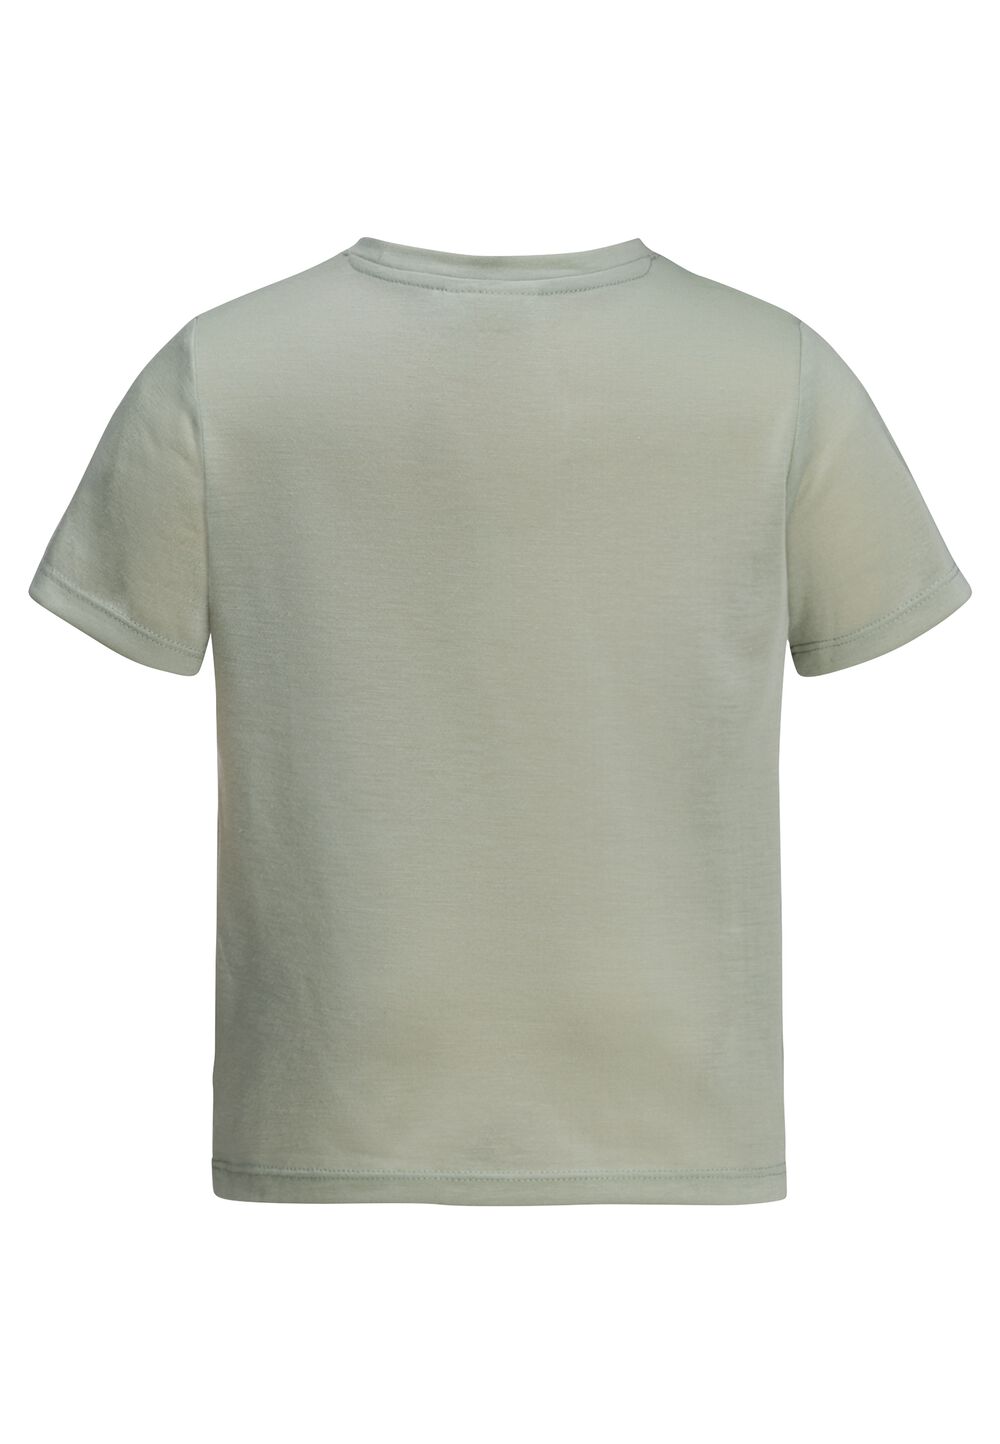 Jack Wolfskin Smileyworld Camp T-Shirt Kids Functioneel shirt Kinderen 92 mint leaf mint leaf